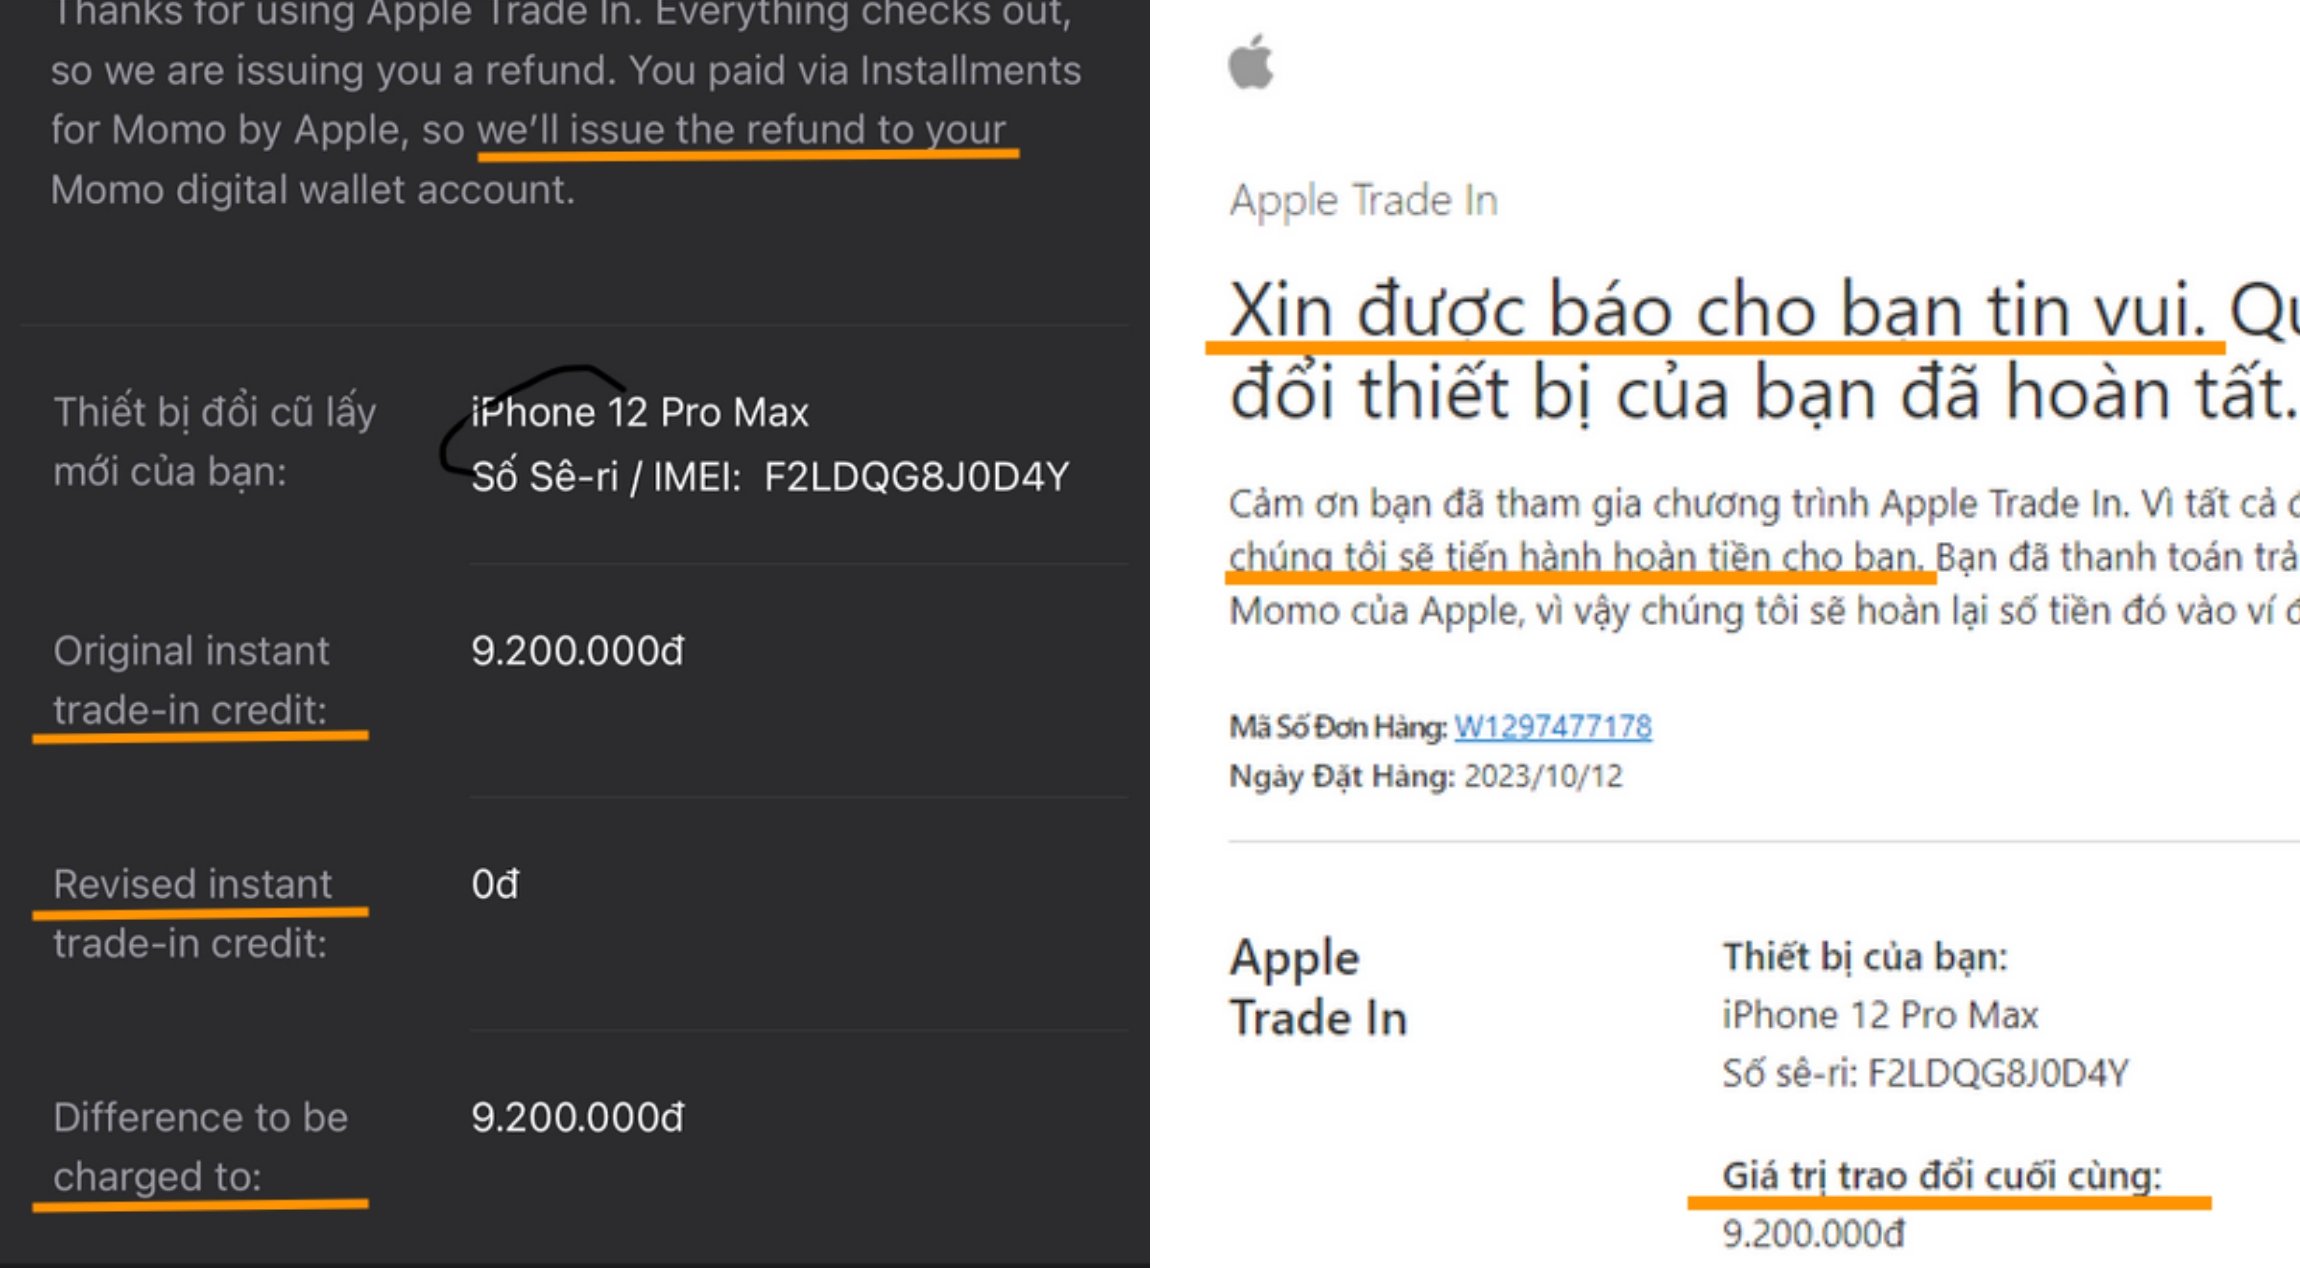 #Phantich: Vụ "bị lừa" khi tradein iPhone 15 Pro Max" rồi ai sai?